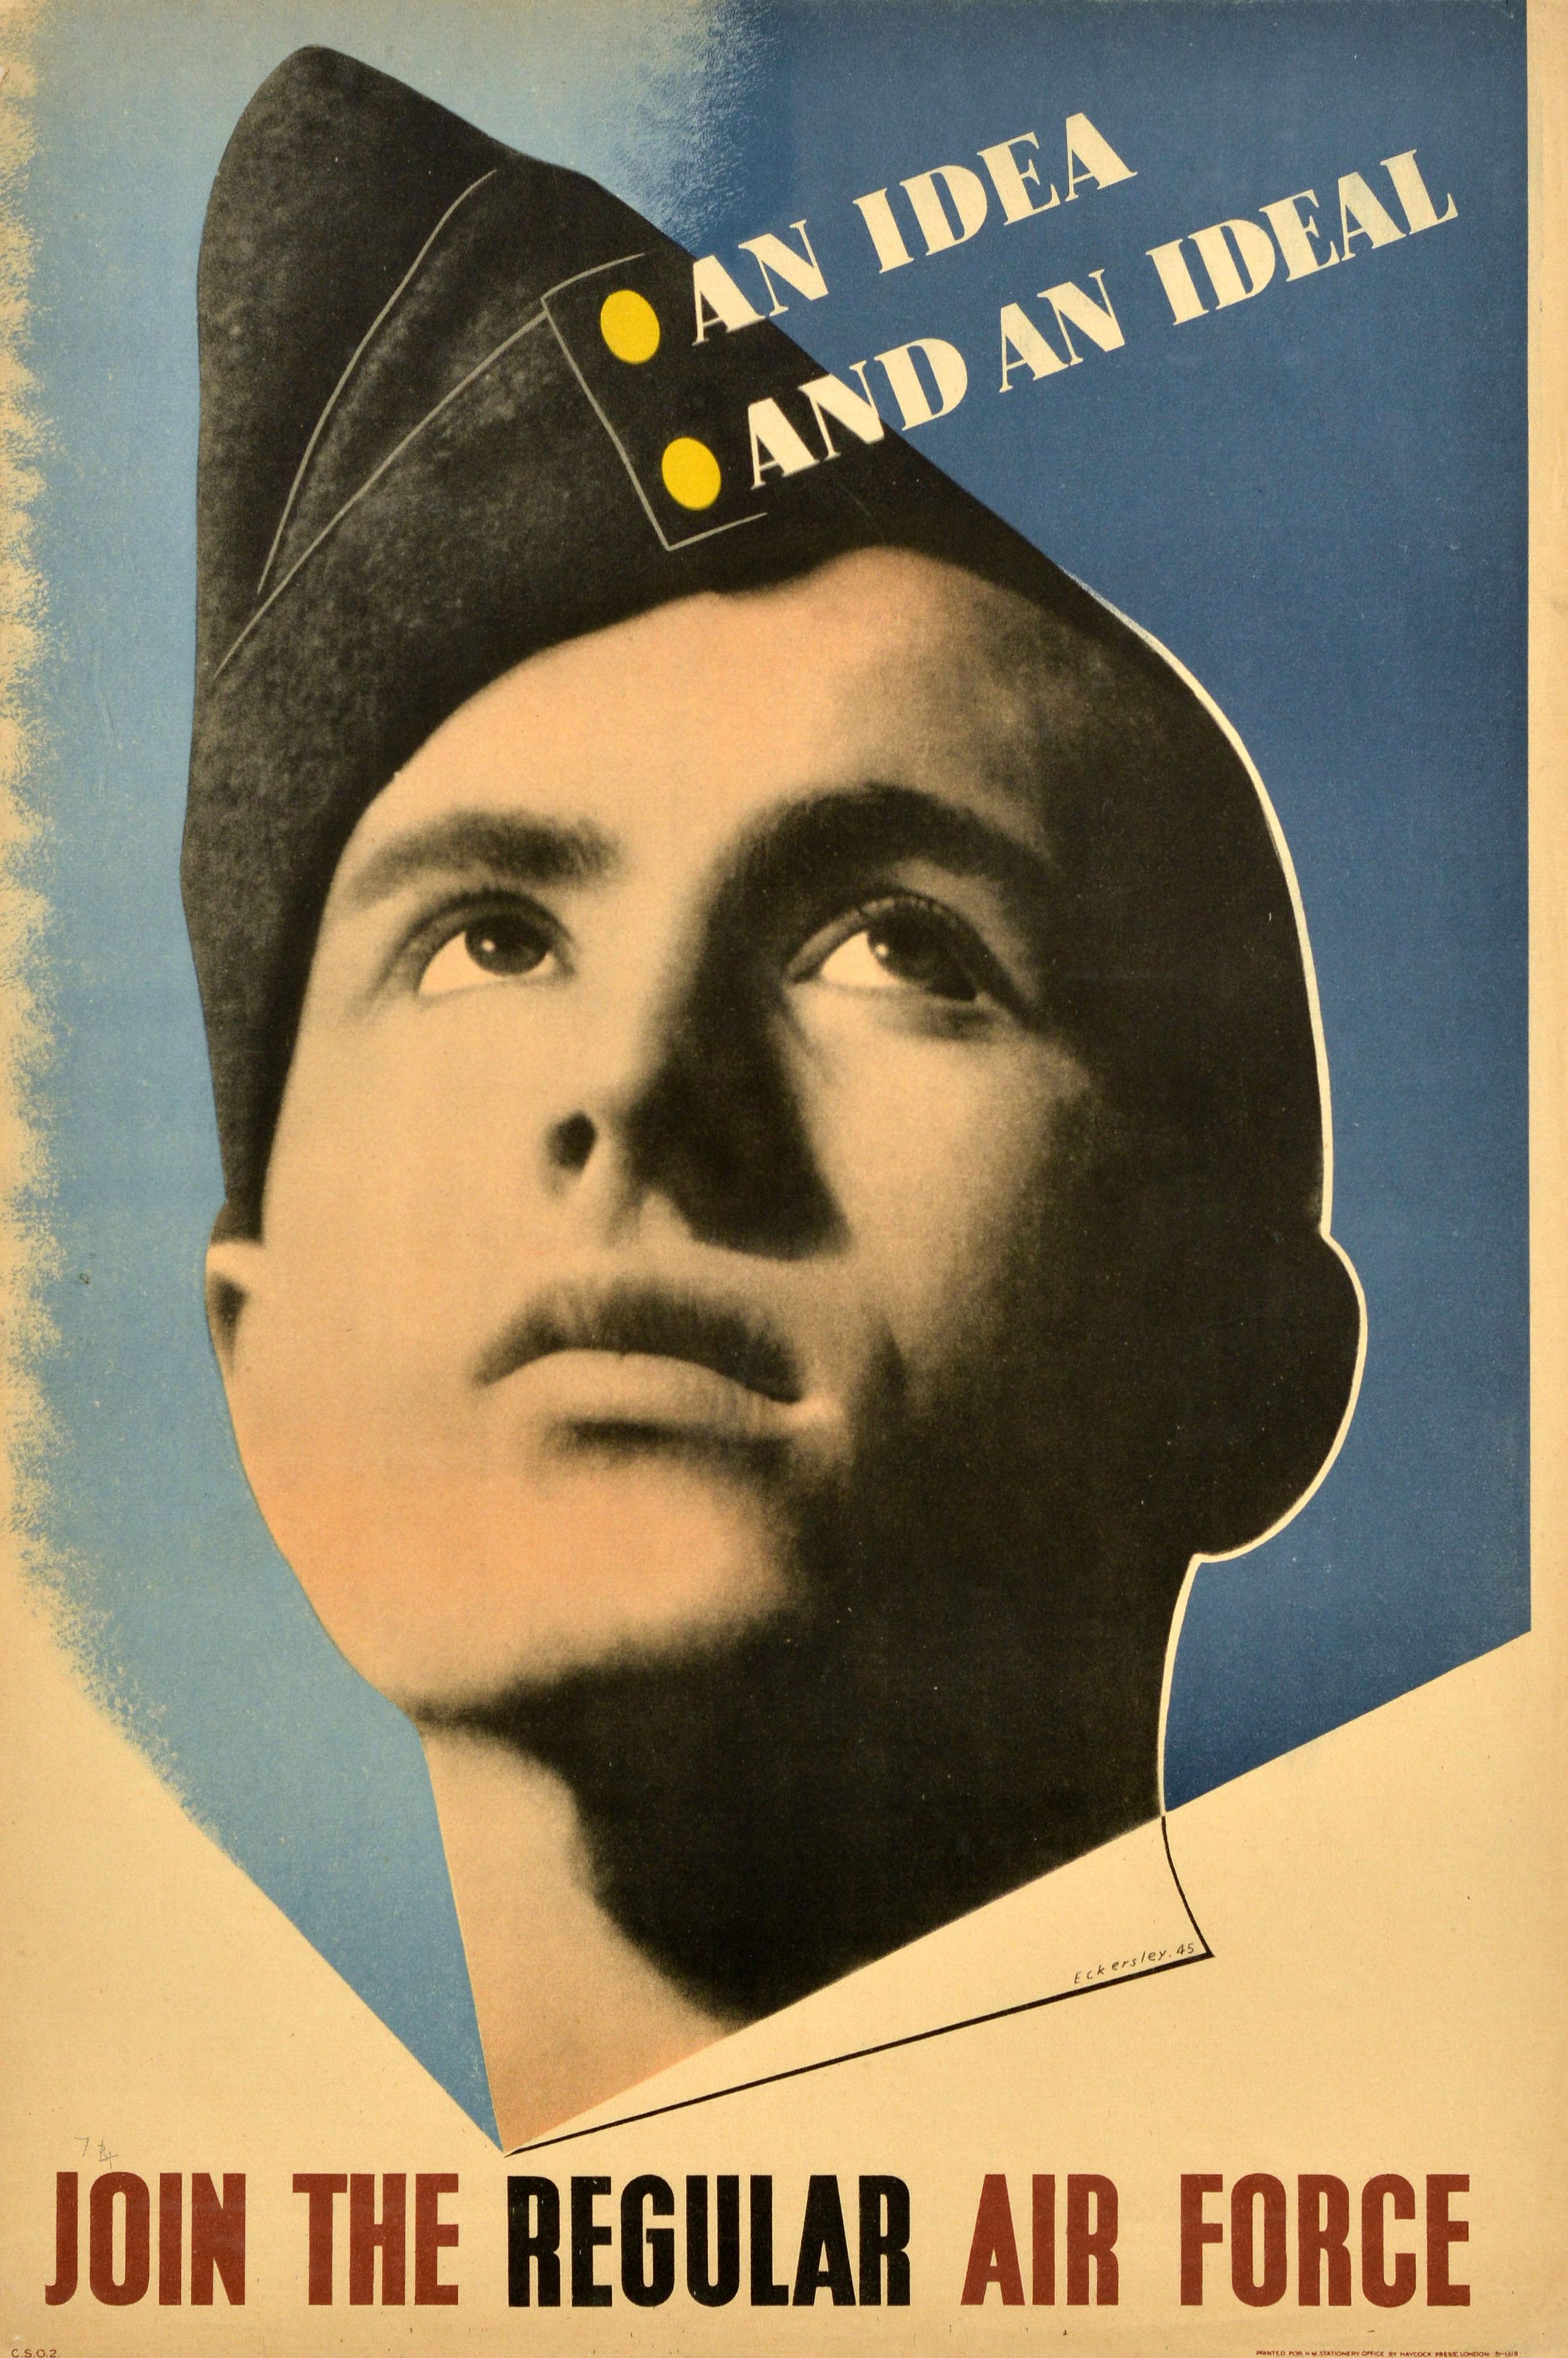 Tom Eckersley Print – Original Vintage WWII Rekrutierungsplakat Propaganda-Poster Idea And An Ideal Air Force, Original